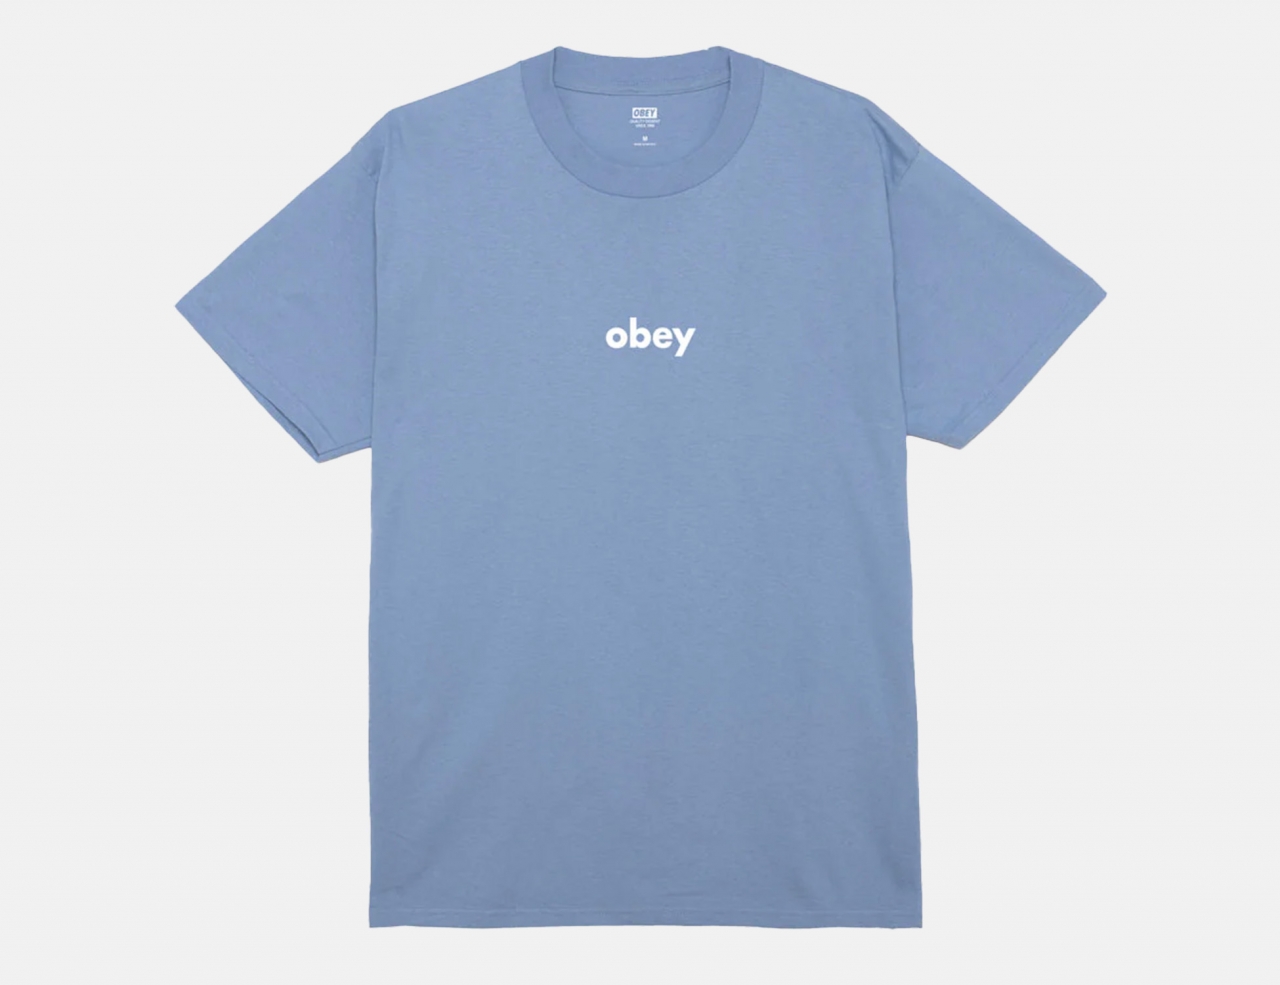 Obey Lower Case 2 T-Shirt - Digital Violet